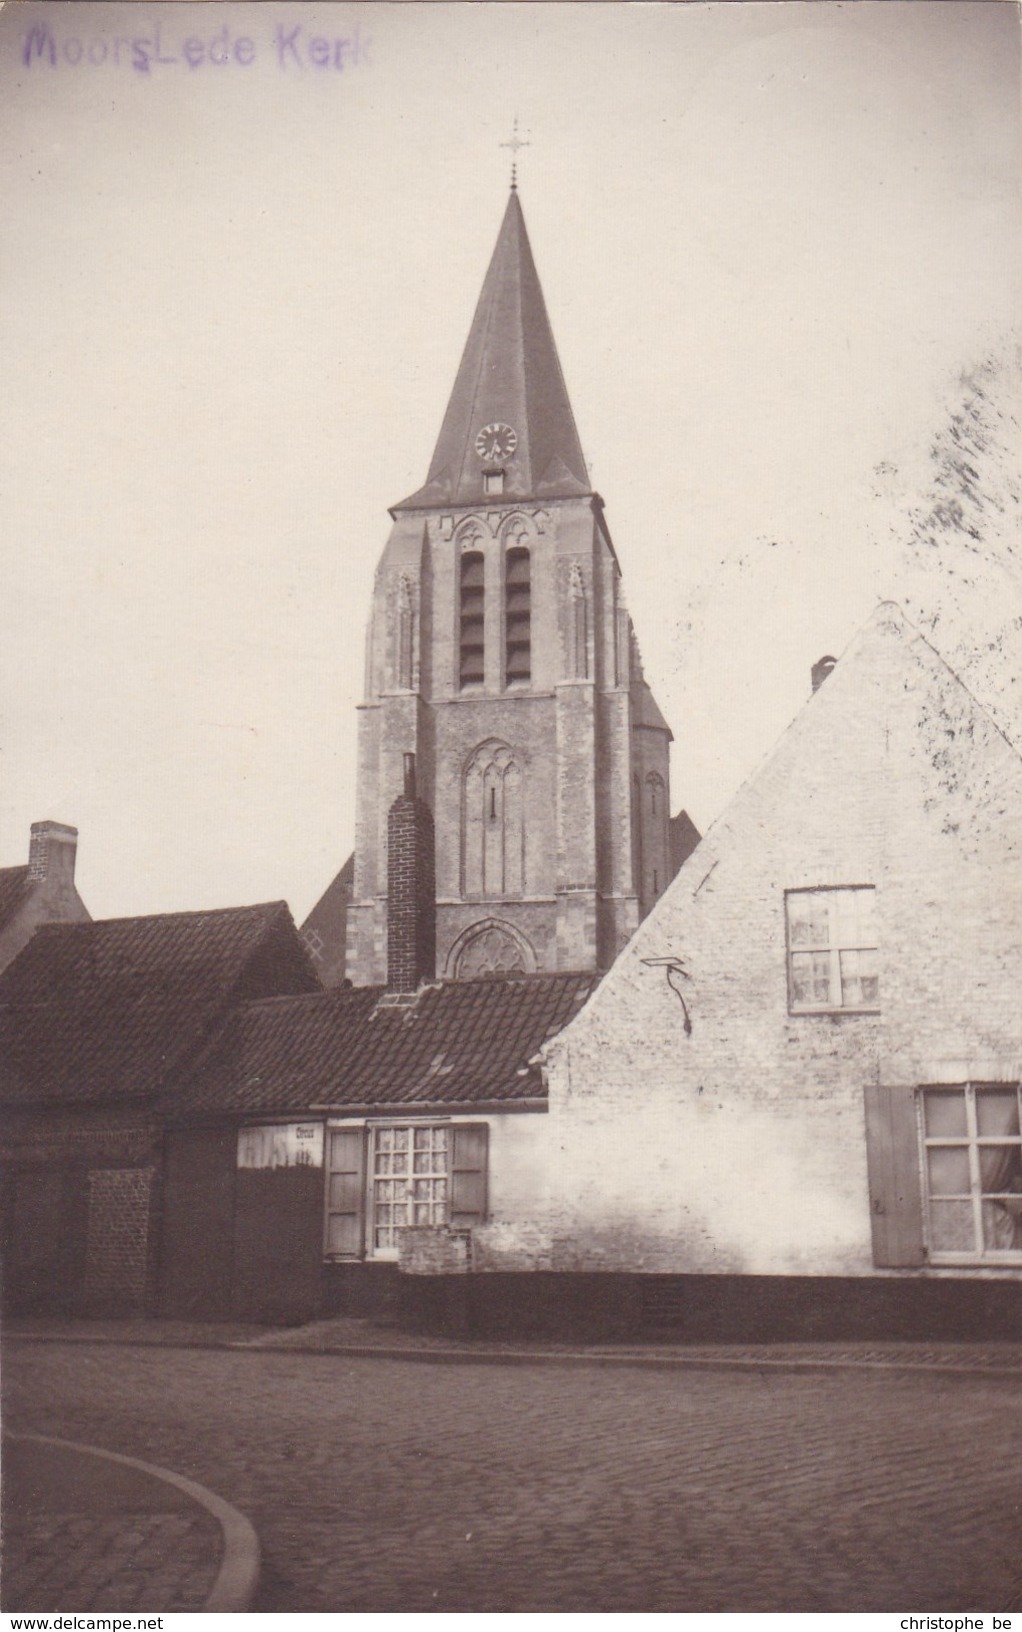 Moorslede Kerk, Unieke Fotokaart (pk36742) - Moorslede